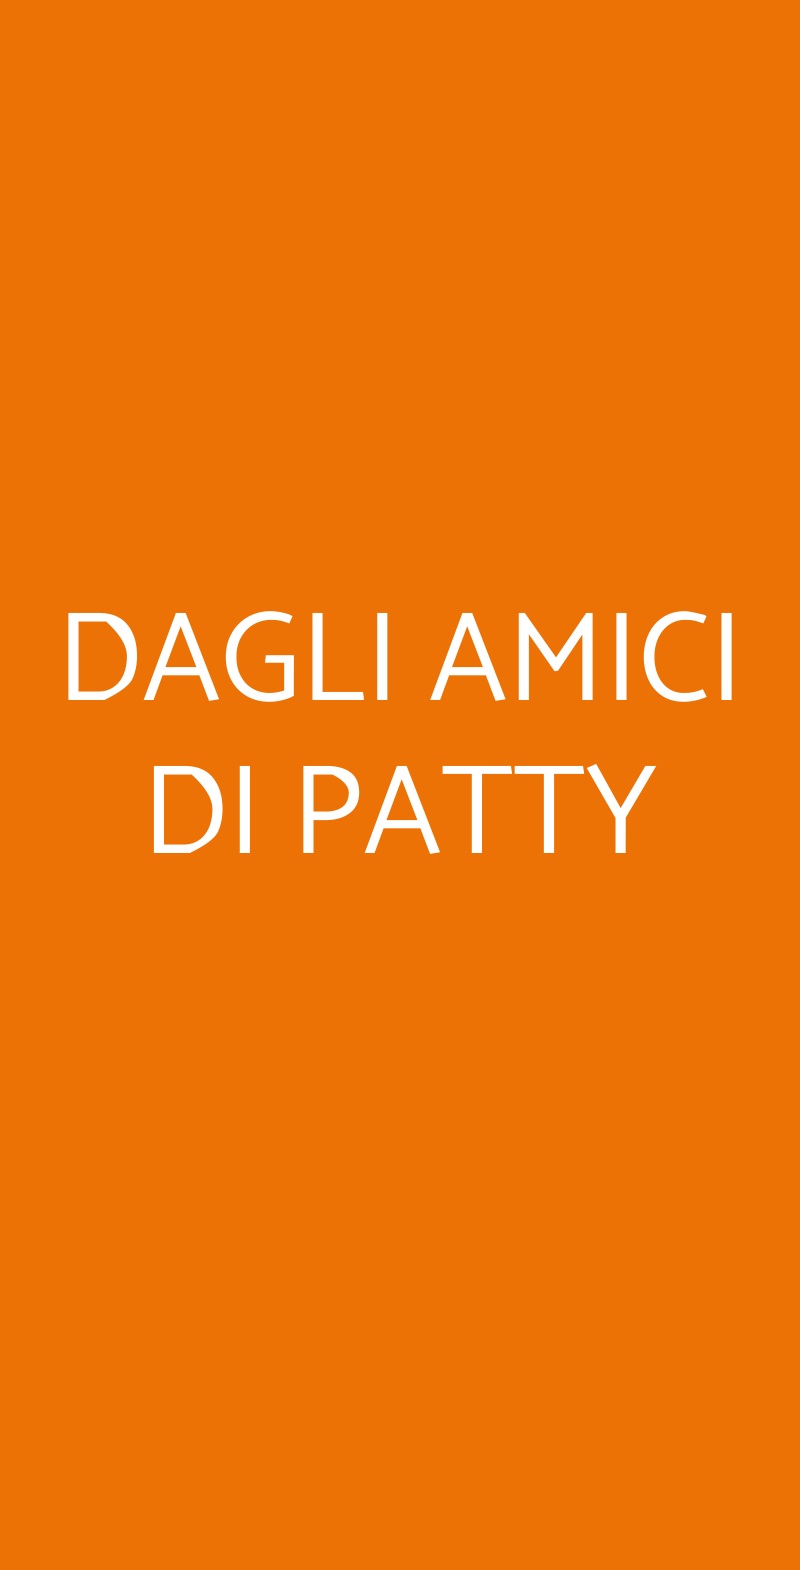 DAGLI AMICI DI PATTY Milano menù 1 pagina